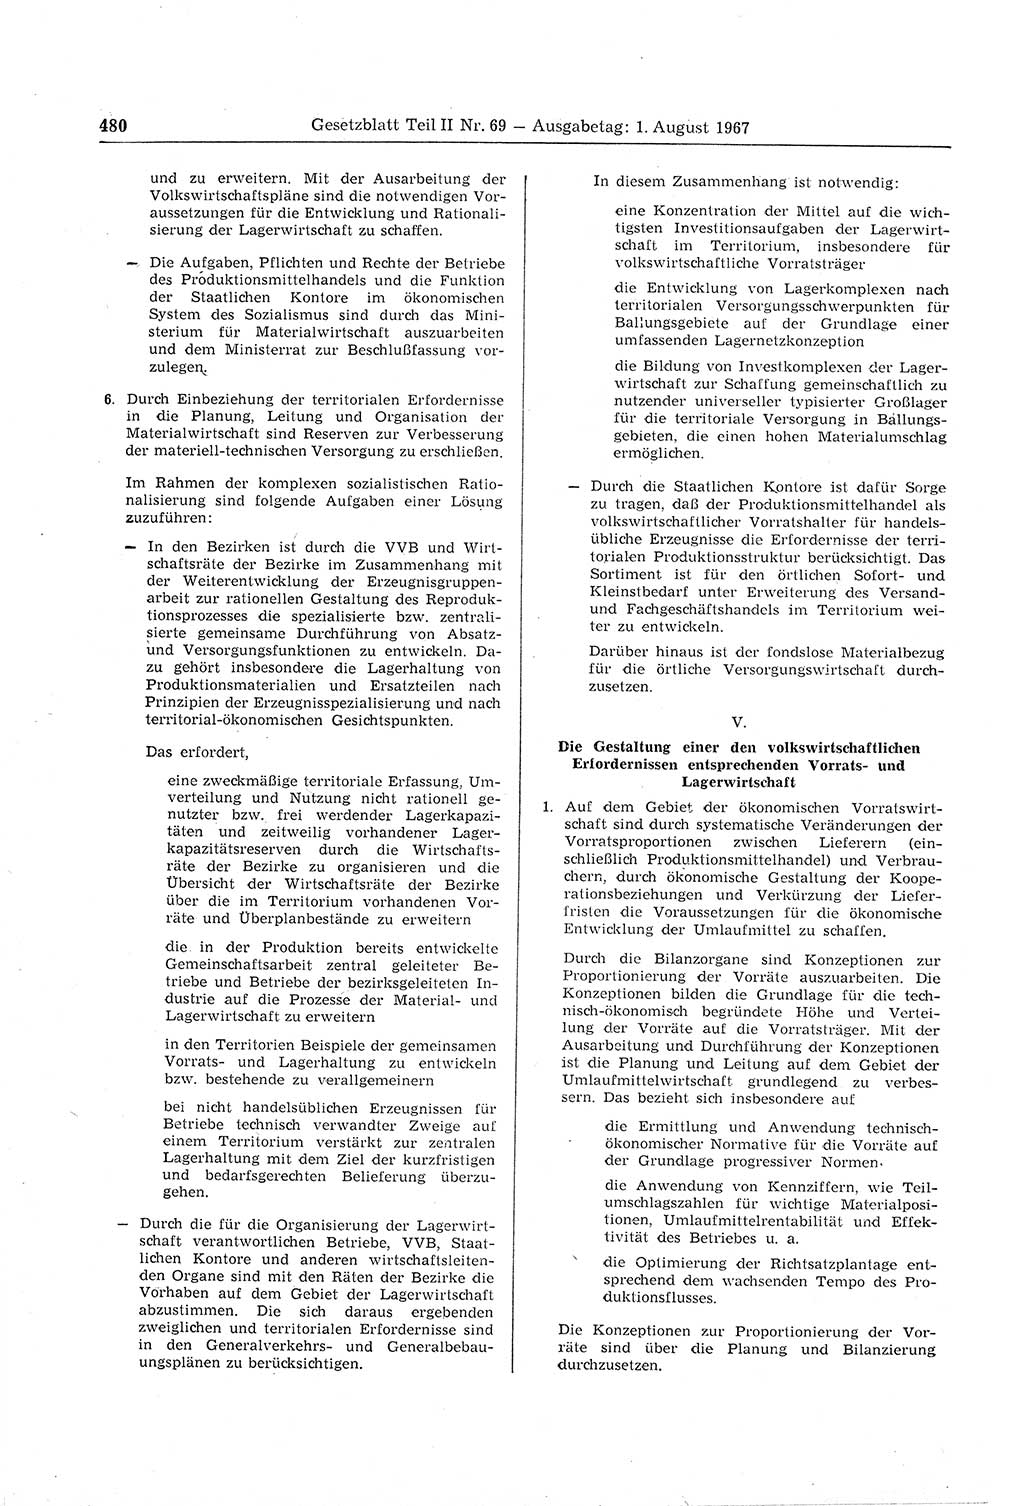 Gesetzblatt (GBl.) der Deutschen Demokratischen Republik (DDR) Teil ⅠⅠ 1967, Seite 480 (GBl. DDR ⅠⅠ 1967, S. 480)